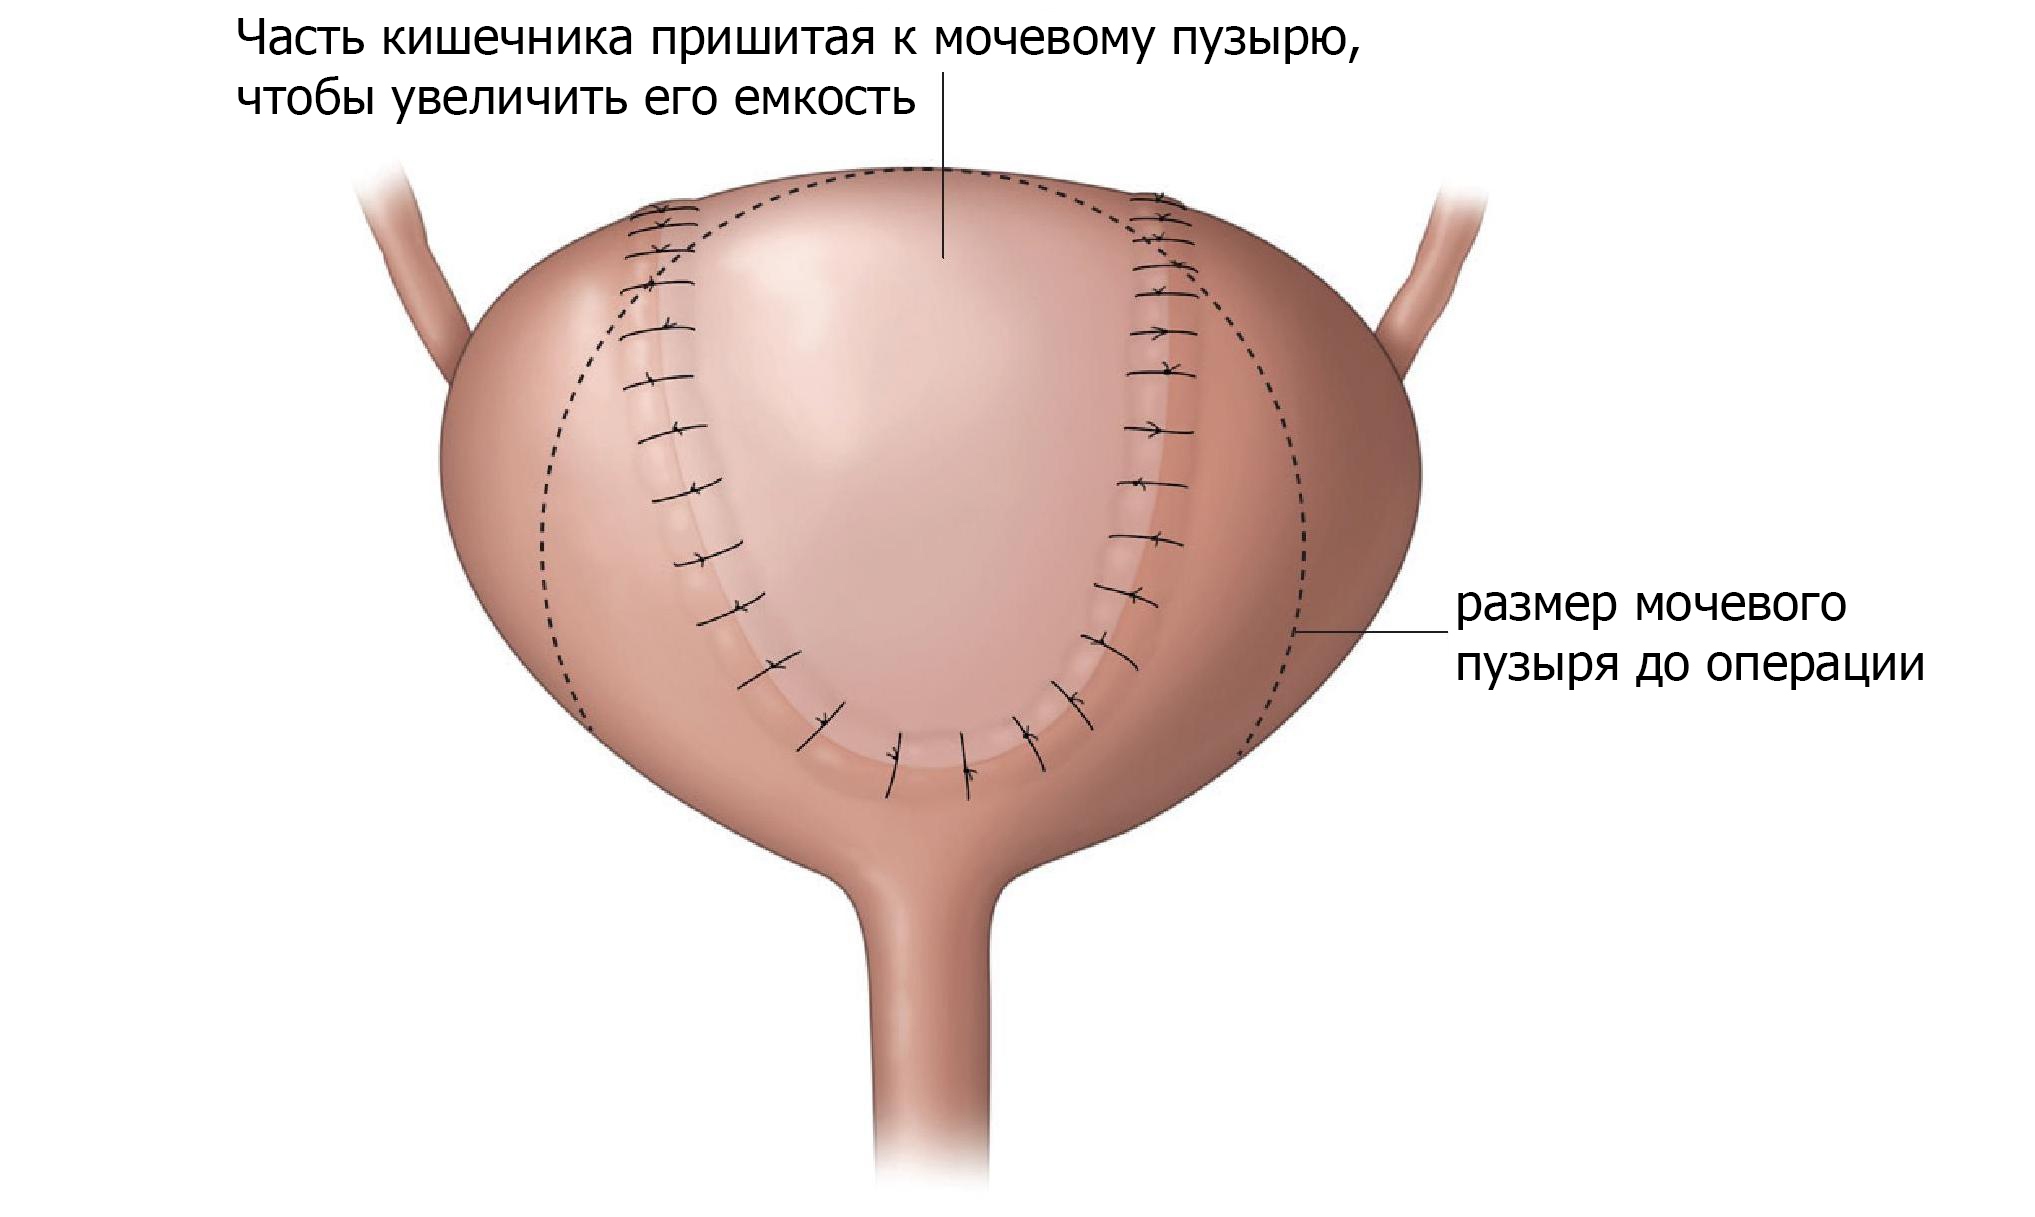 Операция на мочевом пузыре для увеличения его емкости